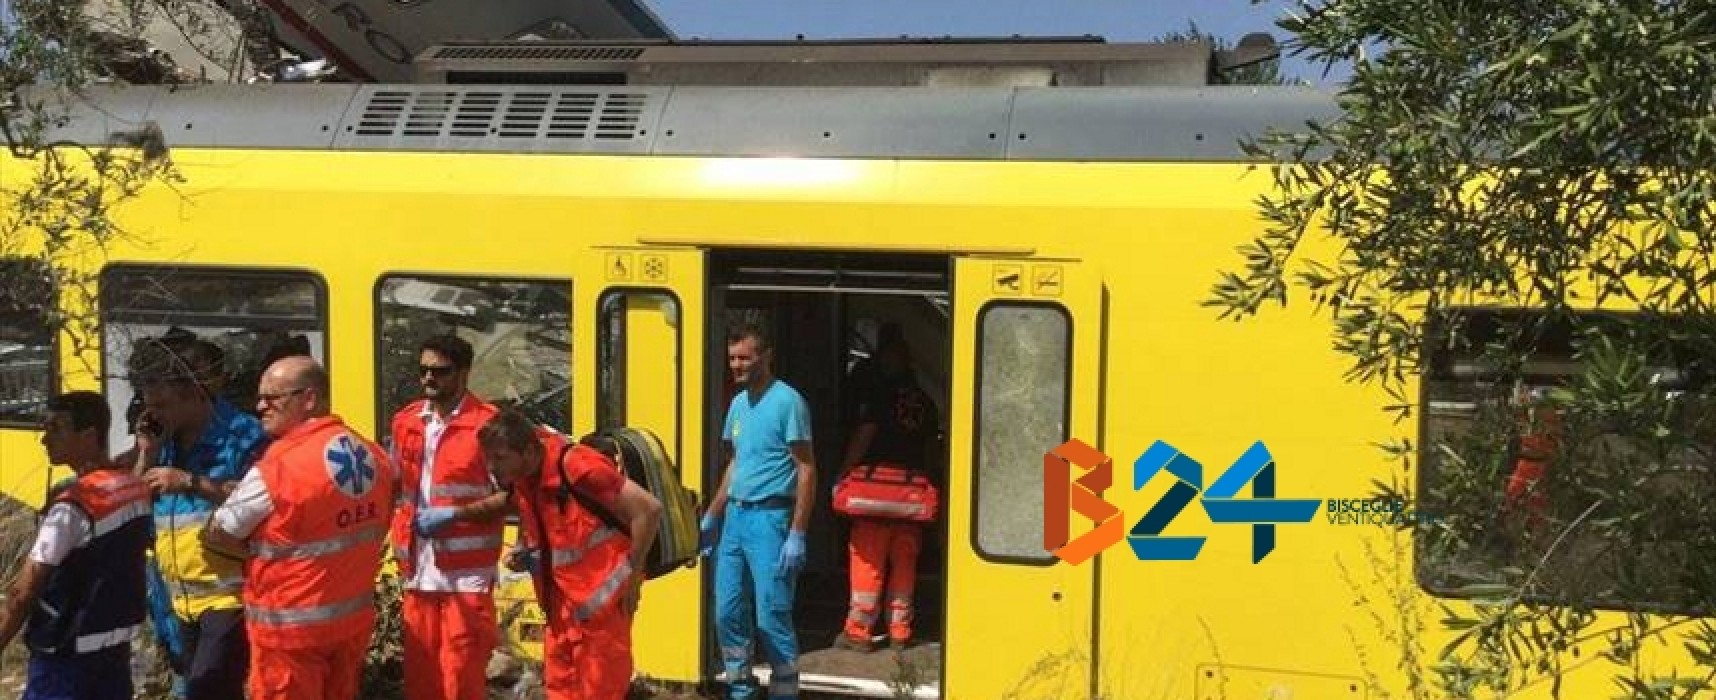 Strage ferroviaria: tra i soccorritori anche l’Oer Bisceglie, “Immagini difficili da dimenticare” / FOTO